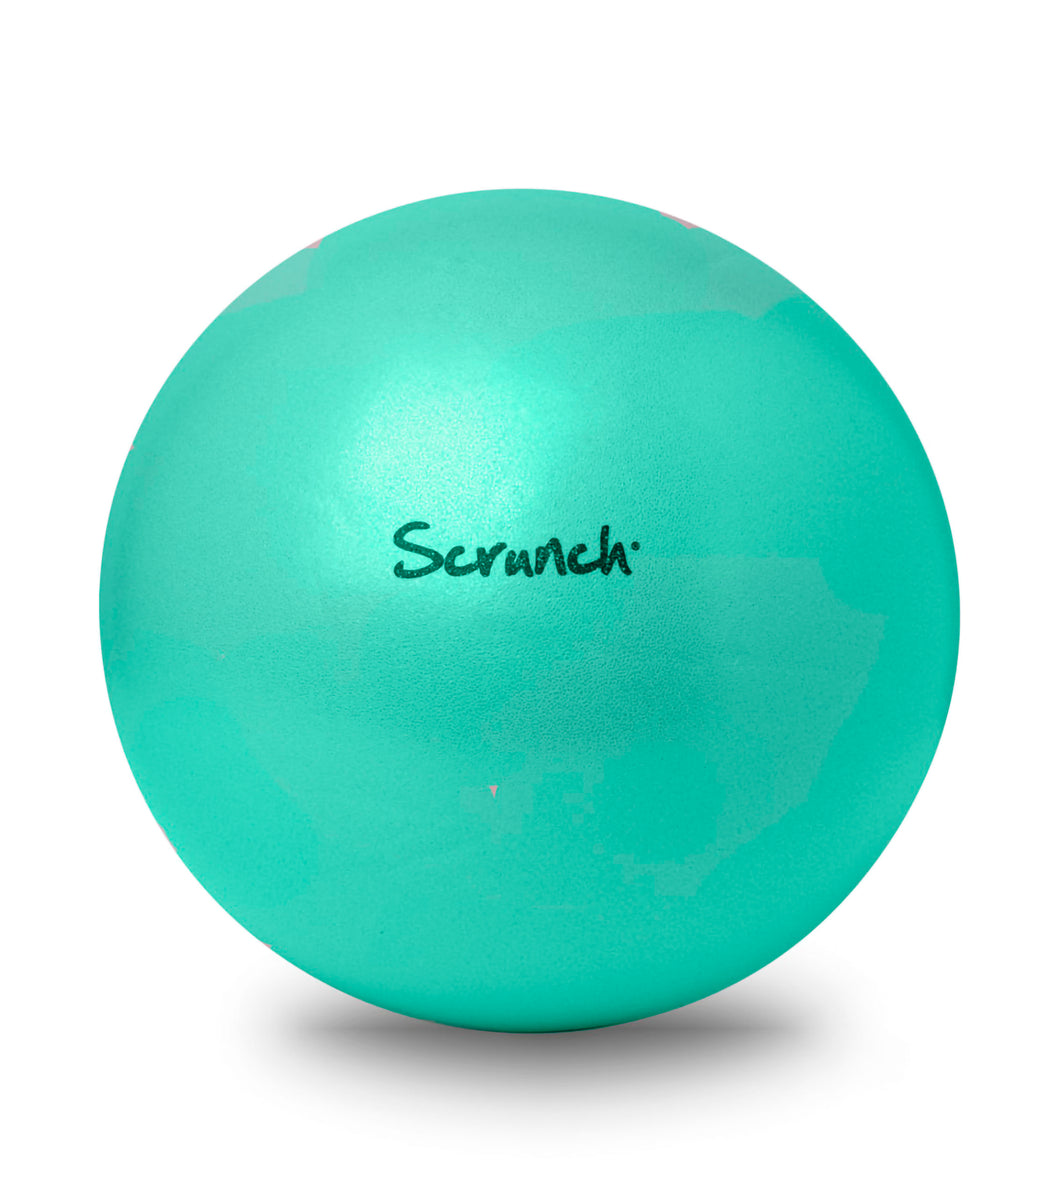 Scrunch Ball - Teal Green